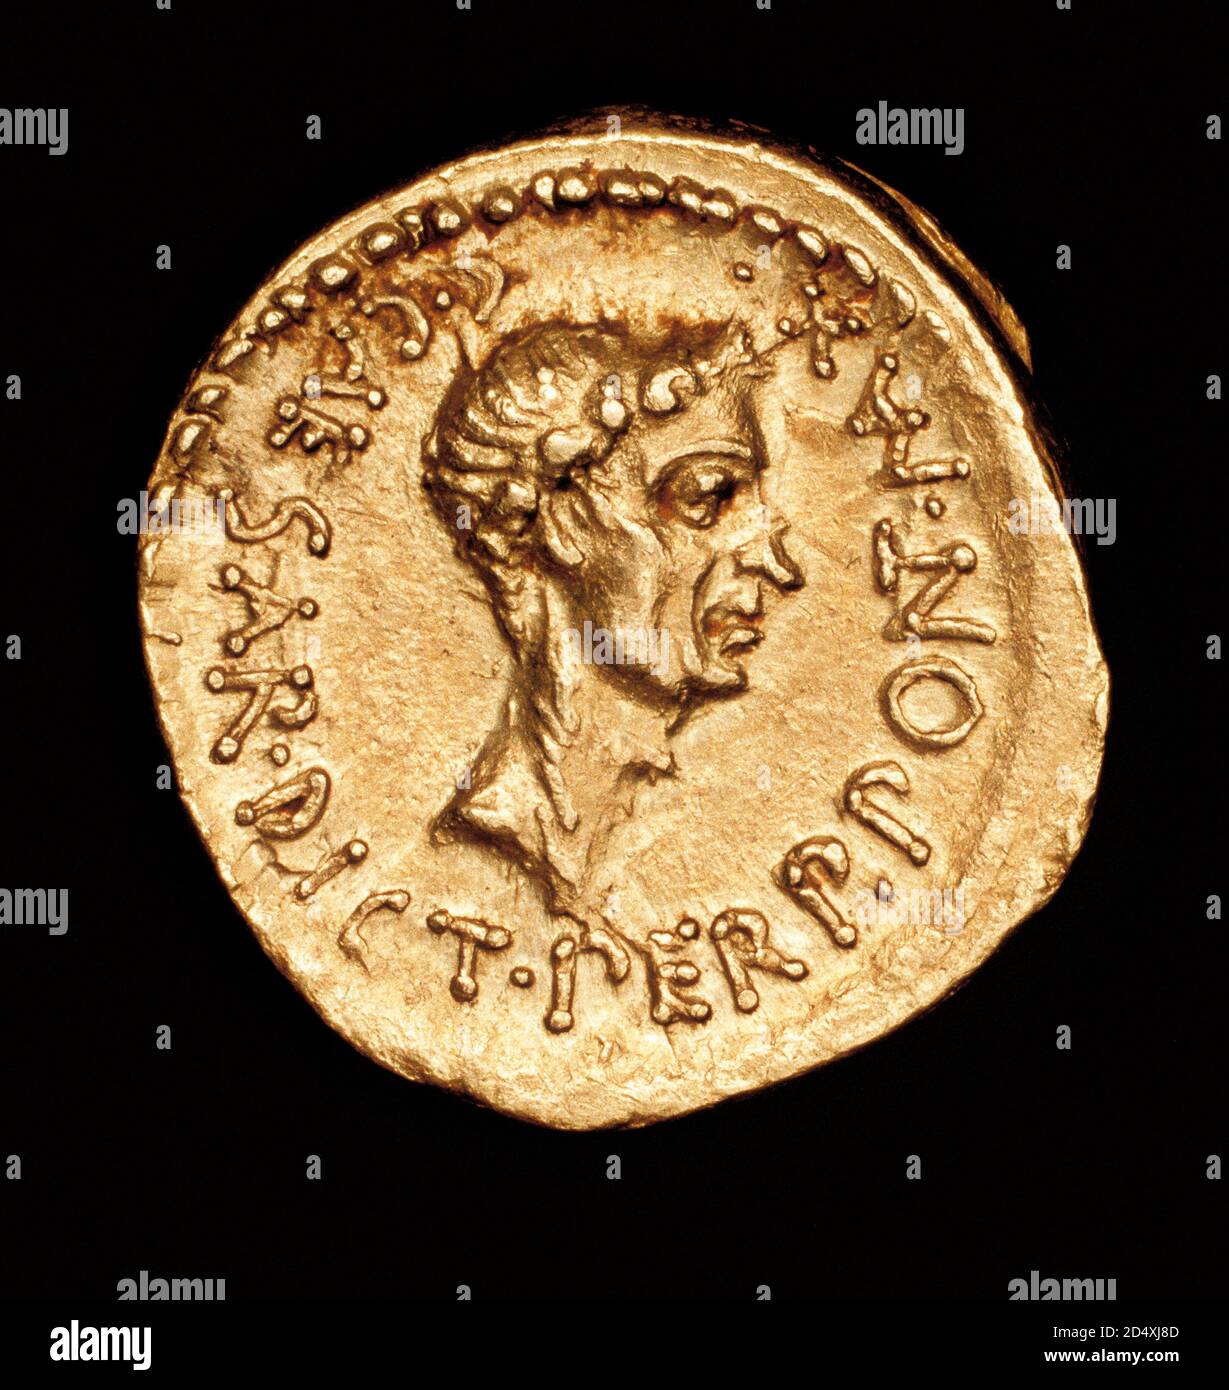 Rare Antica moneta romana, Aureo romano, Giulio Cesare, c 43 a.C., coniata  nella Gallia Cisalpina Foto stock - Alamy